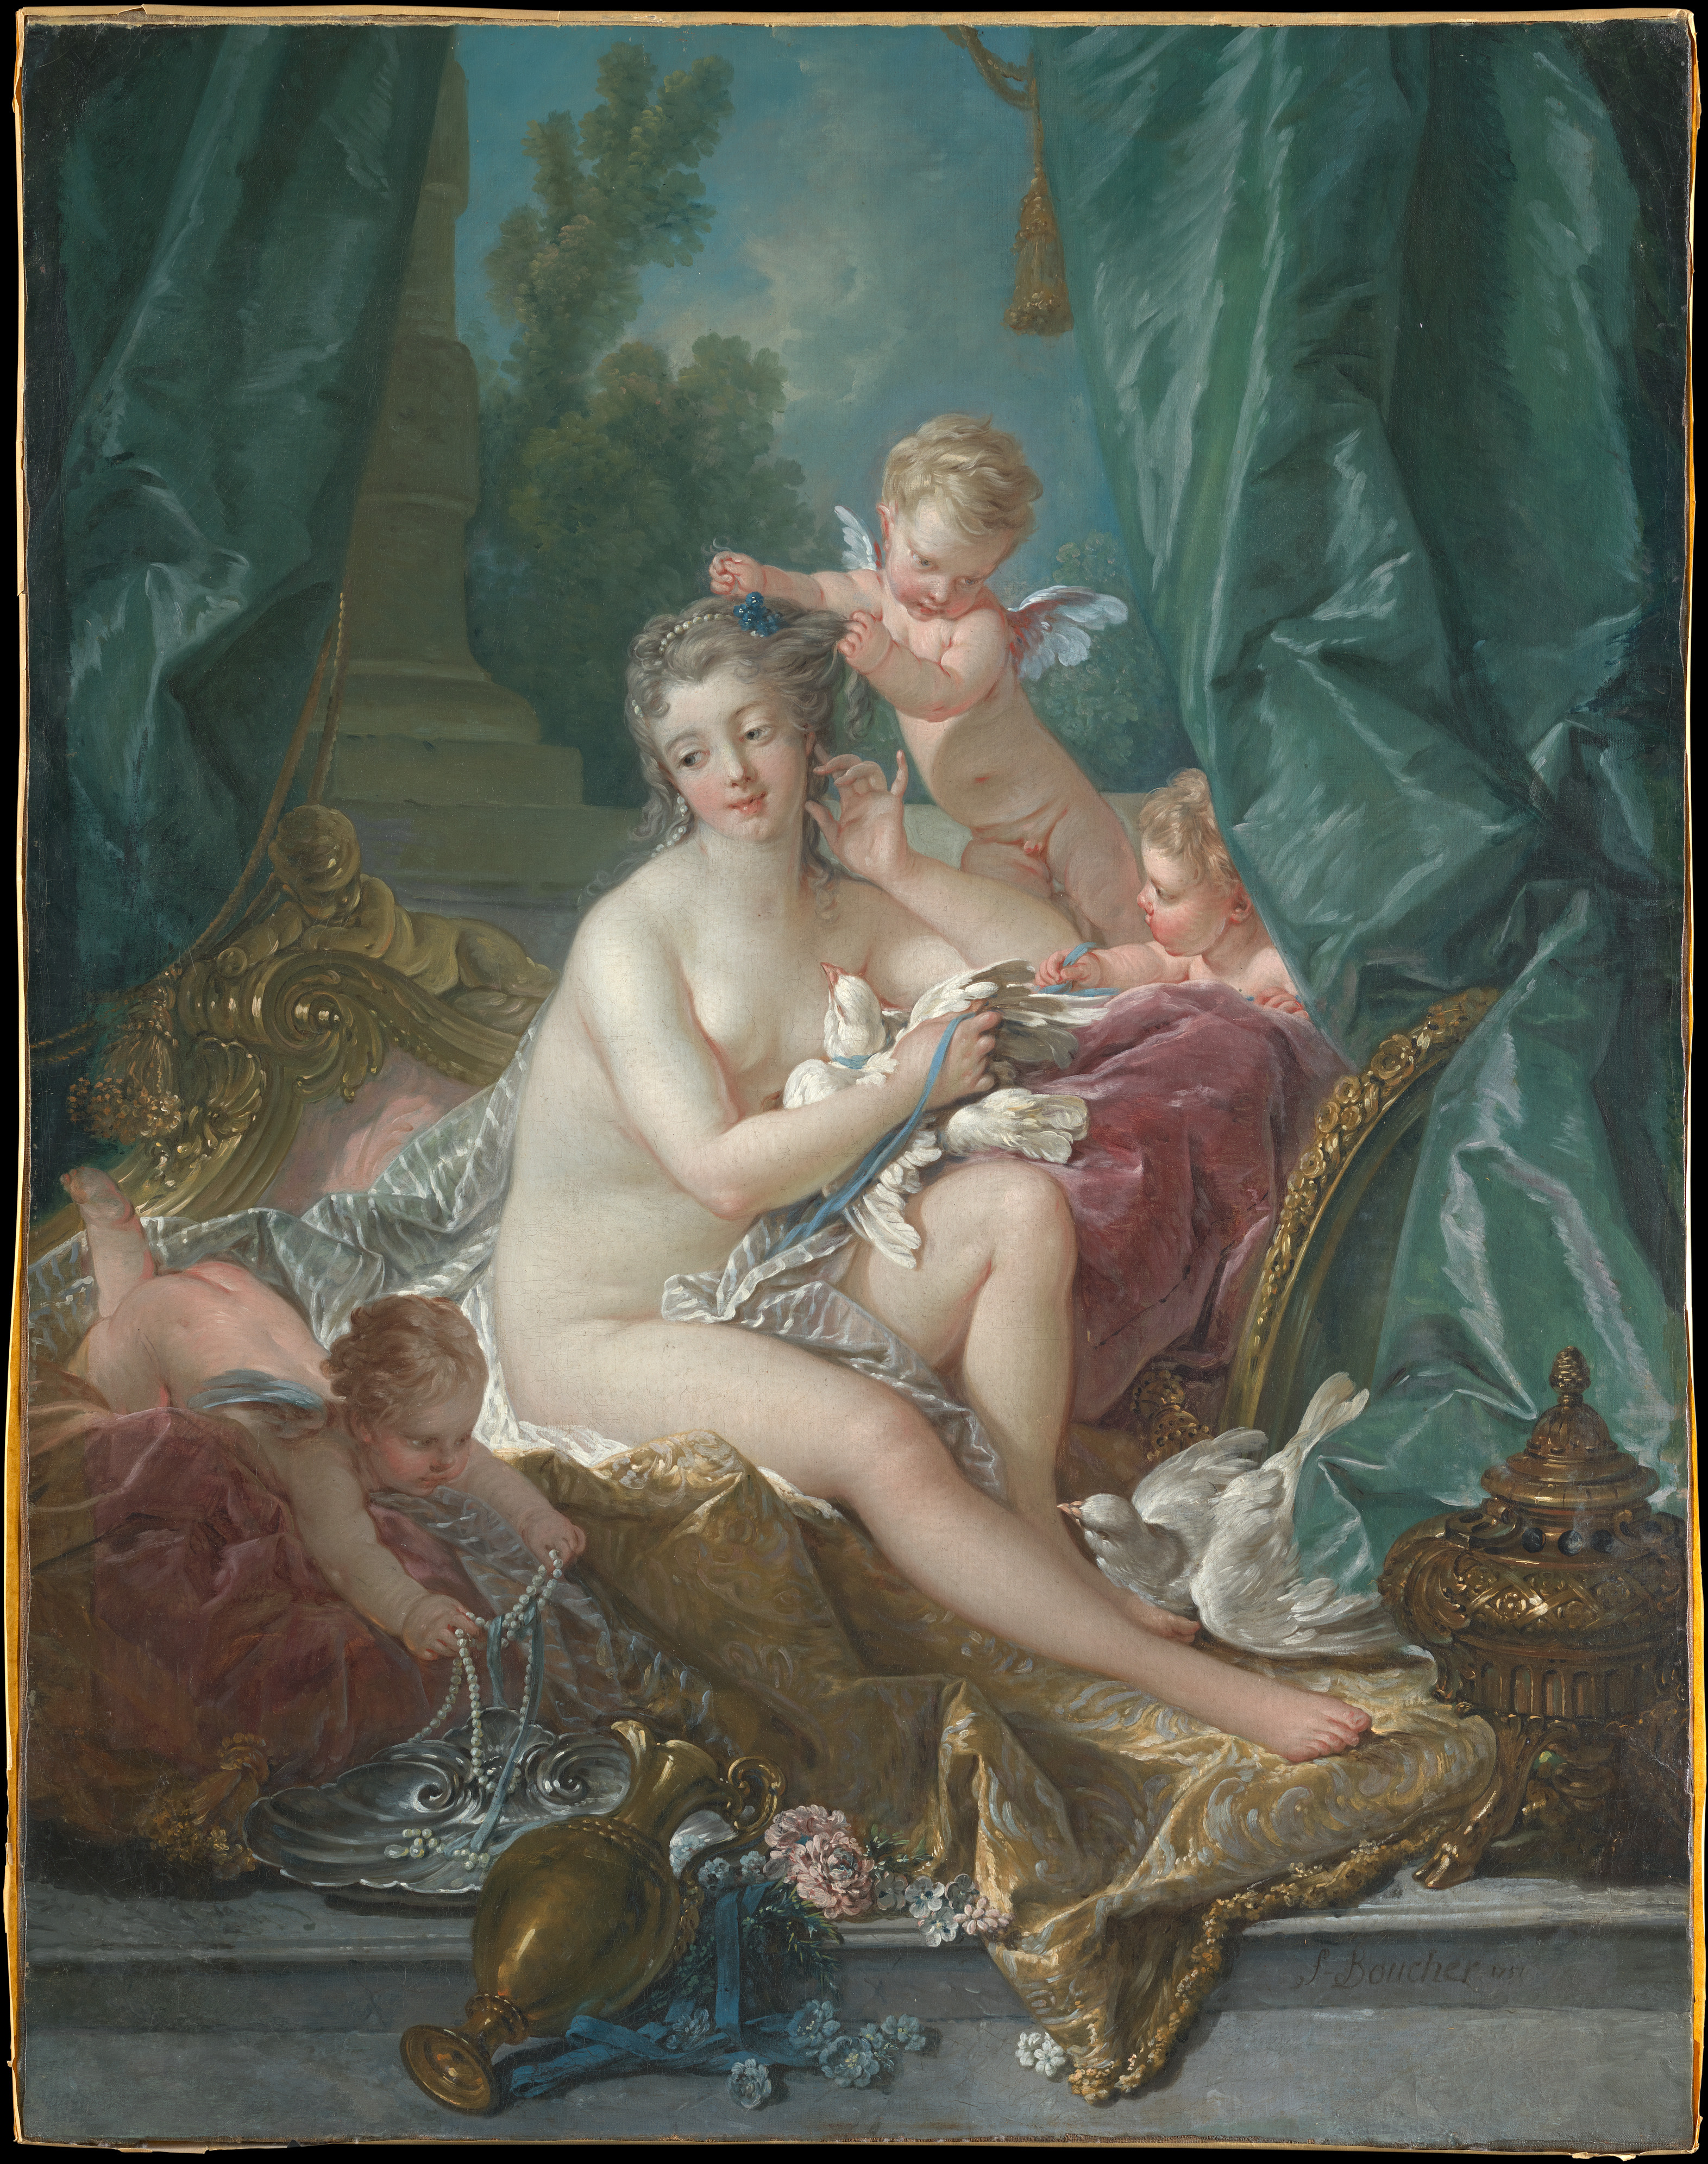 Toaleta lui Venus by Francois Boucher - 1751 - 108.3 x 85.1 cm 